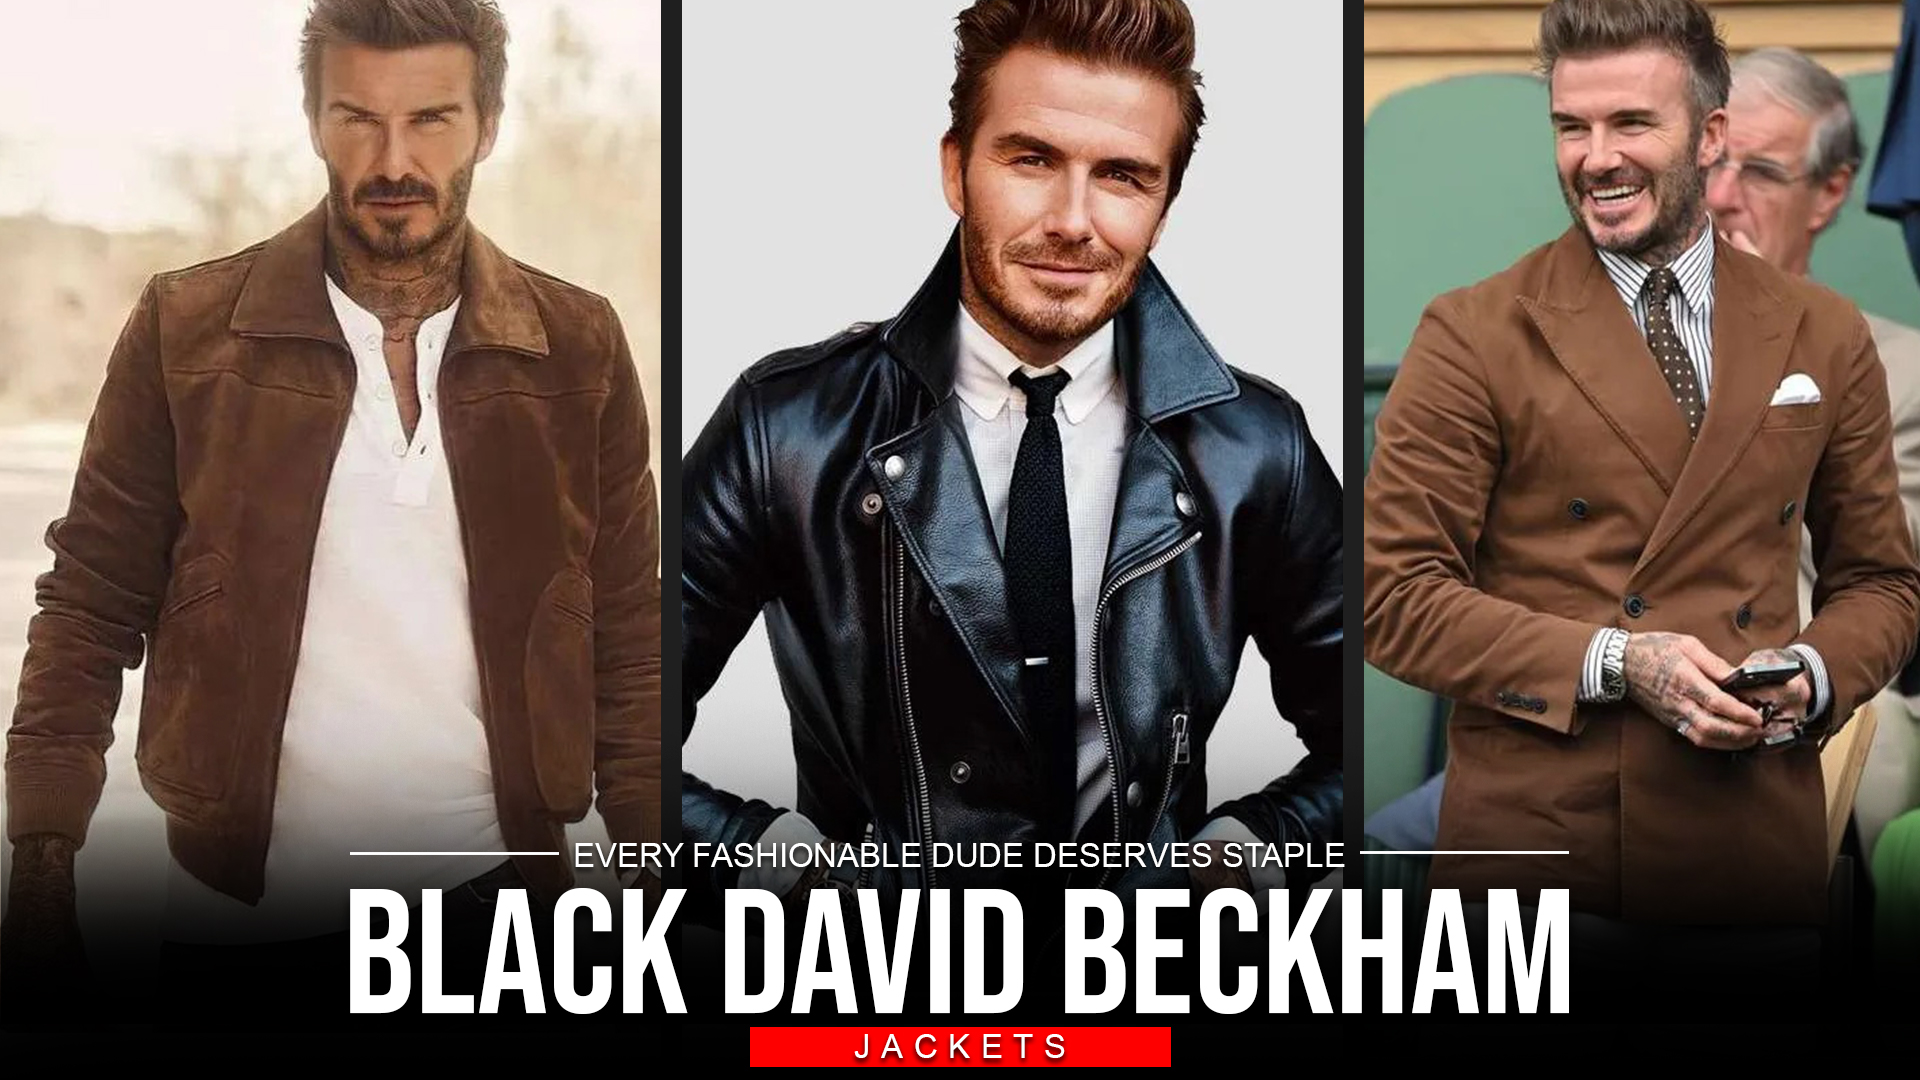 Every Fashionable Dude Deserves Staple Black David Beckham Jackets